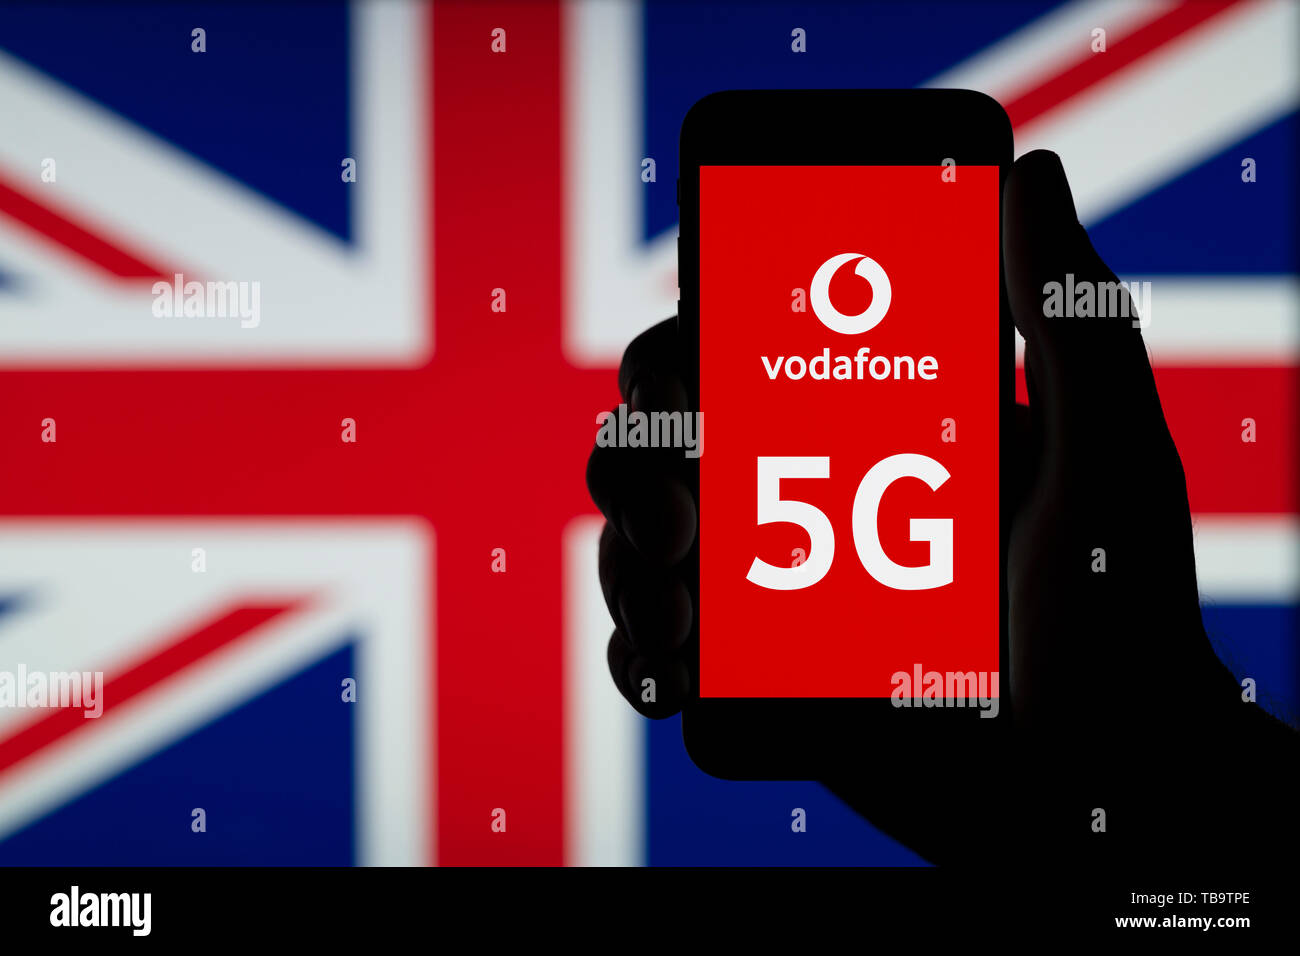 La silhouette d'une main d'un homme est titulaire d'un smartphone affichant le logo de Vodafone et les lettres 5G, devant un drapeau britannique (usage éditorial uniquement). Banque D'Images